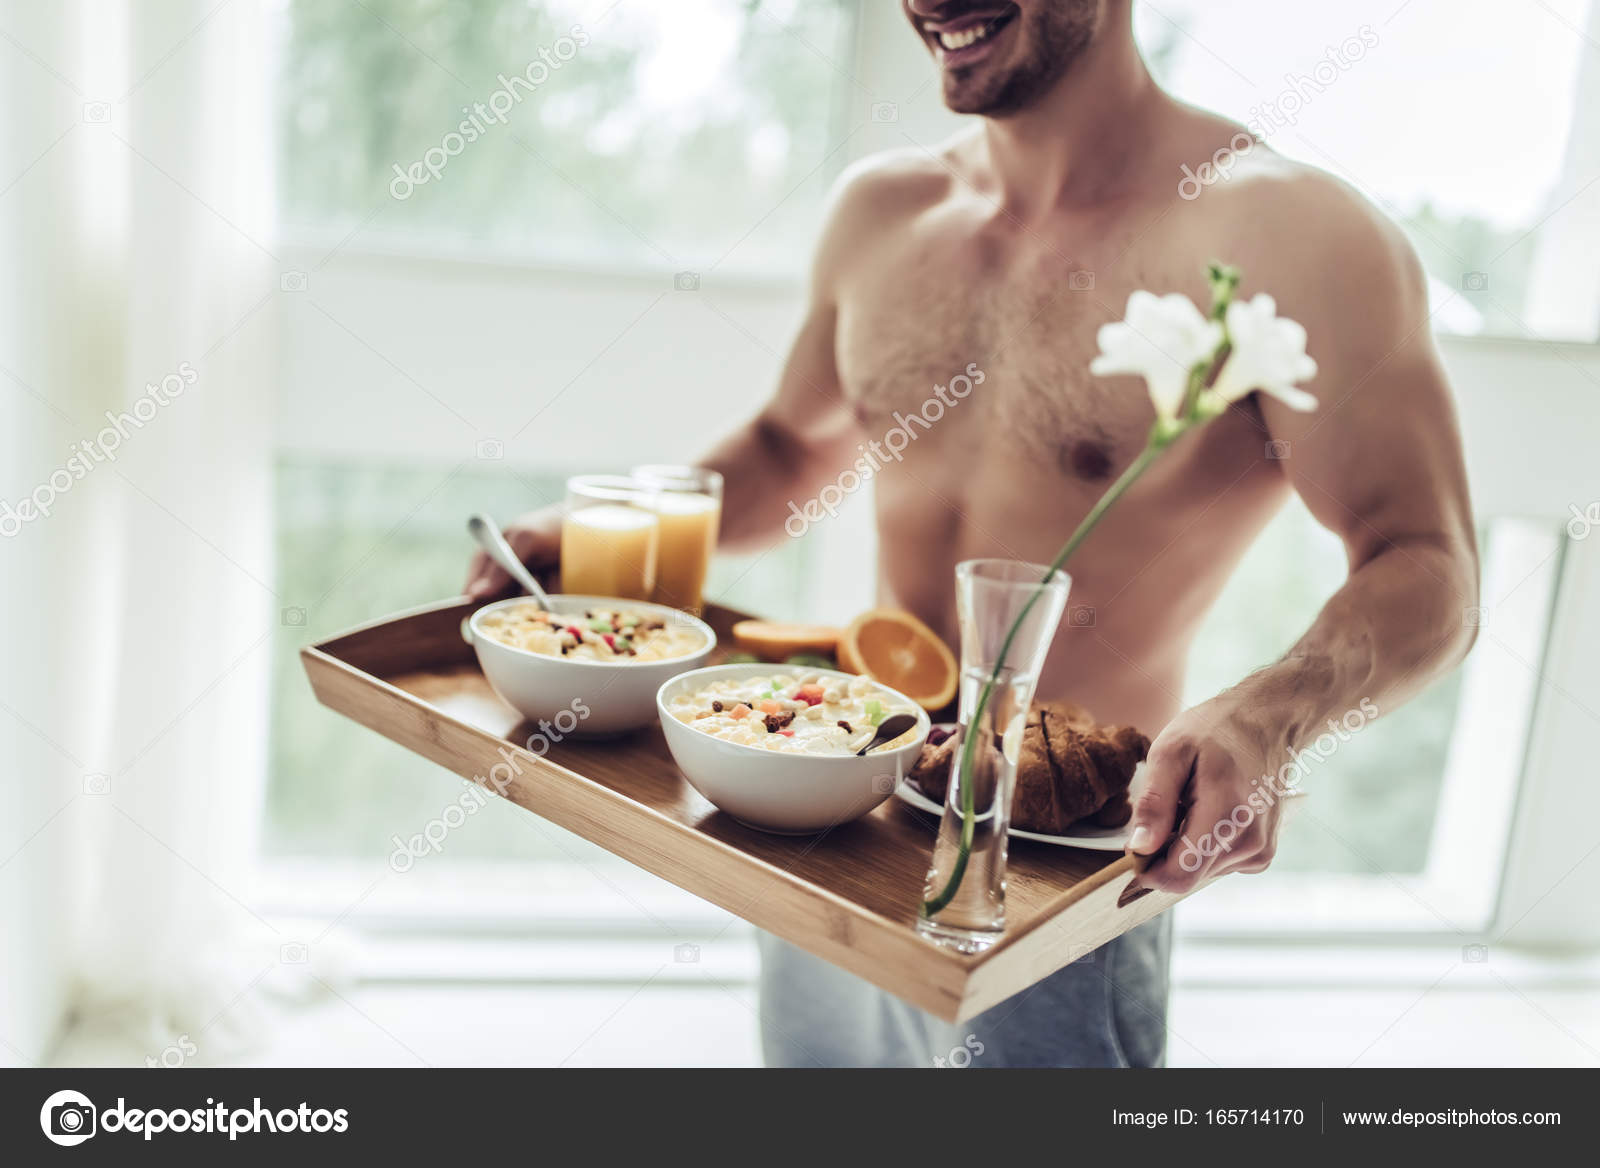 Откровенно позирует за завтраком и голая ест макаронс